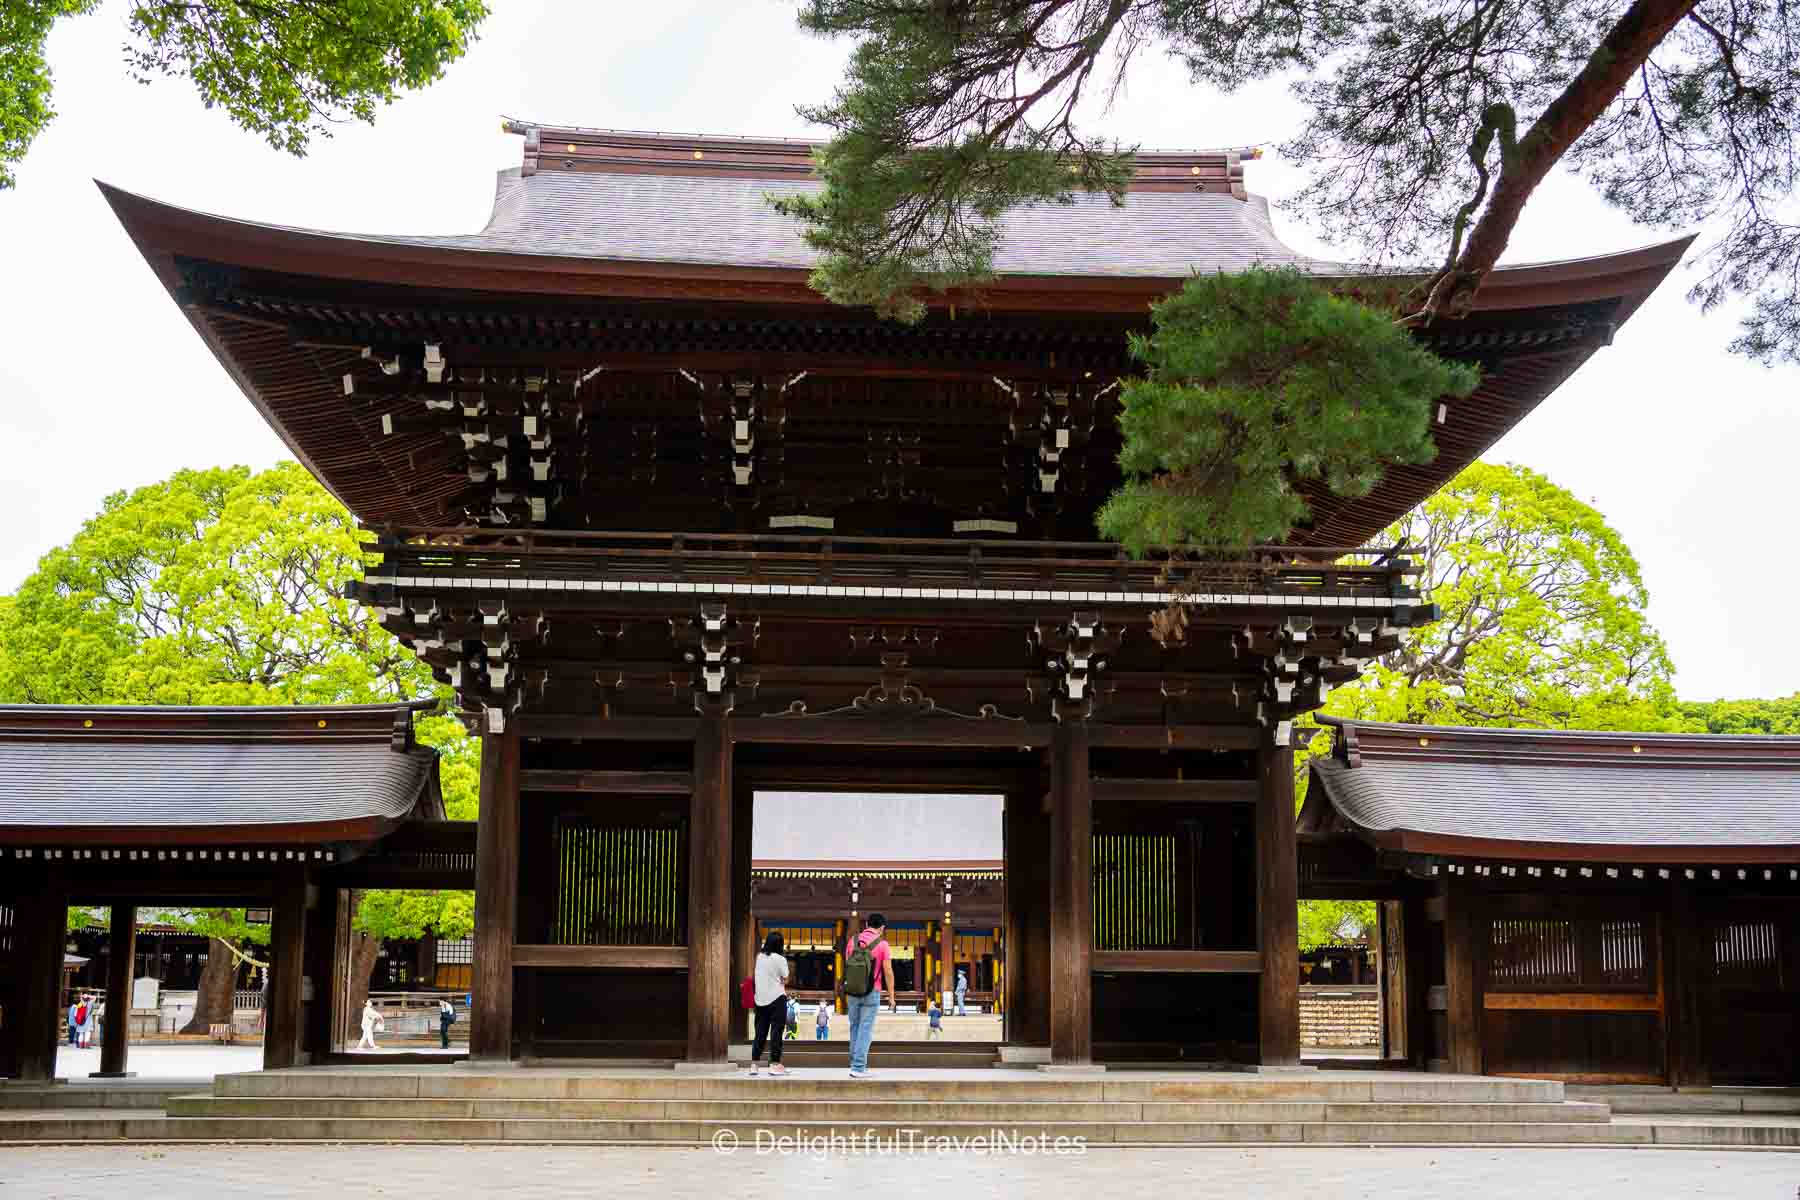 the main gate of Meiji Jingu.